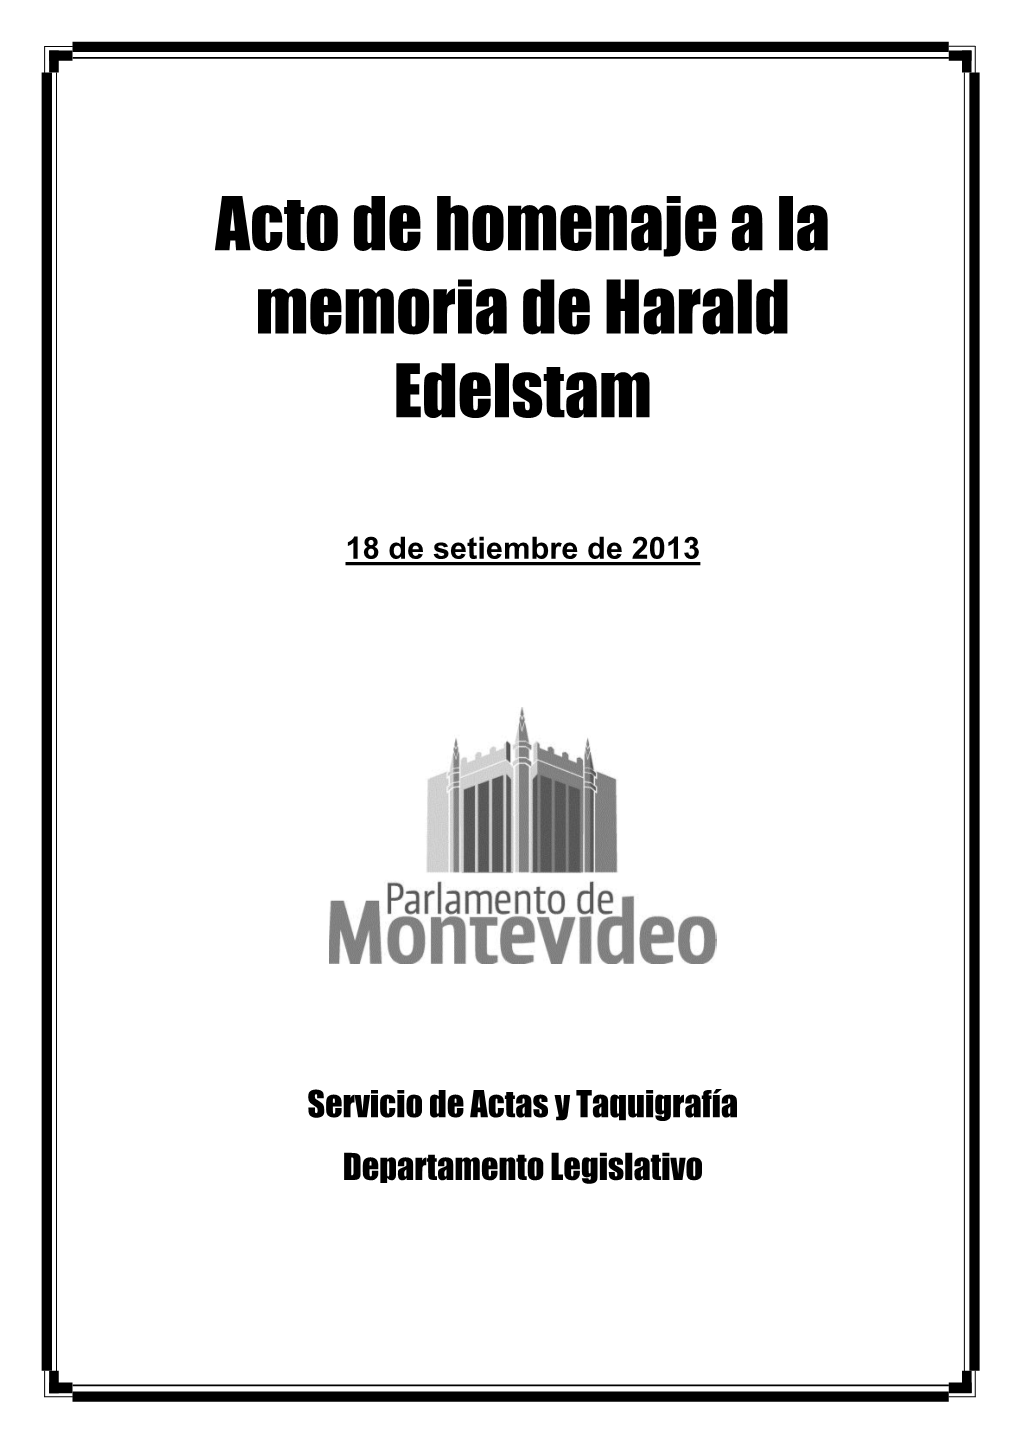 Acto De Homenaje a La Memoria De Harald Edelstam